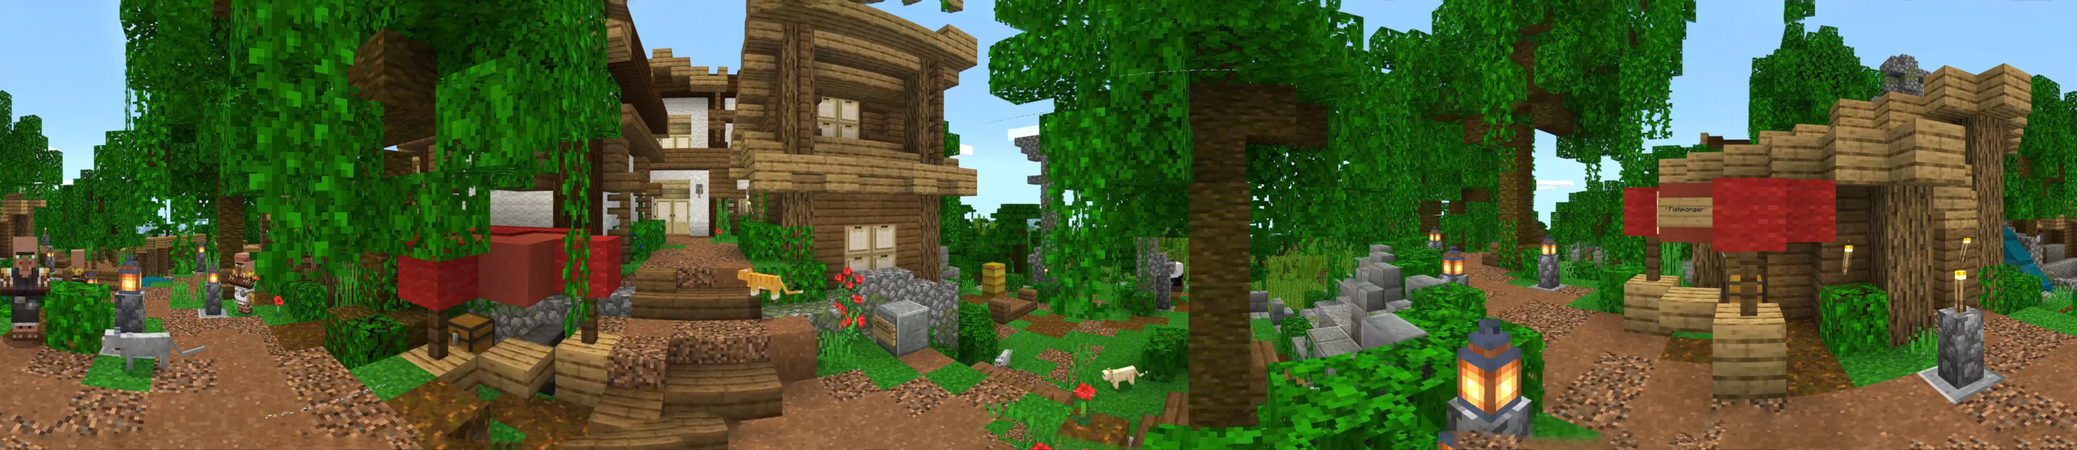 Hidden Village In Minecraft Marketplace Minecraft